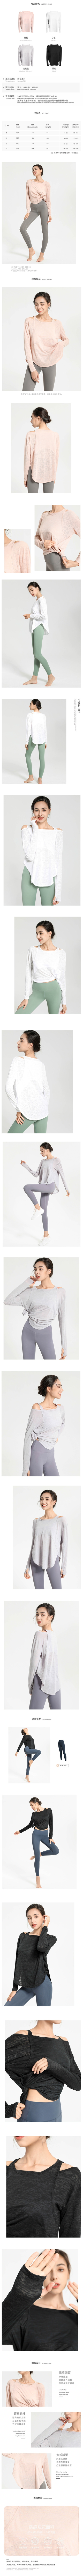 玩美衣櫃速乾休閒運動瑜珈長袖上衣S-XL(共4色)